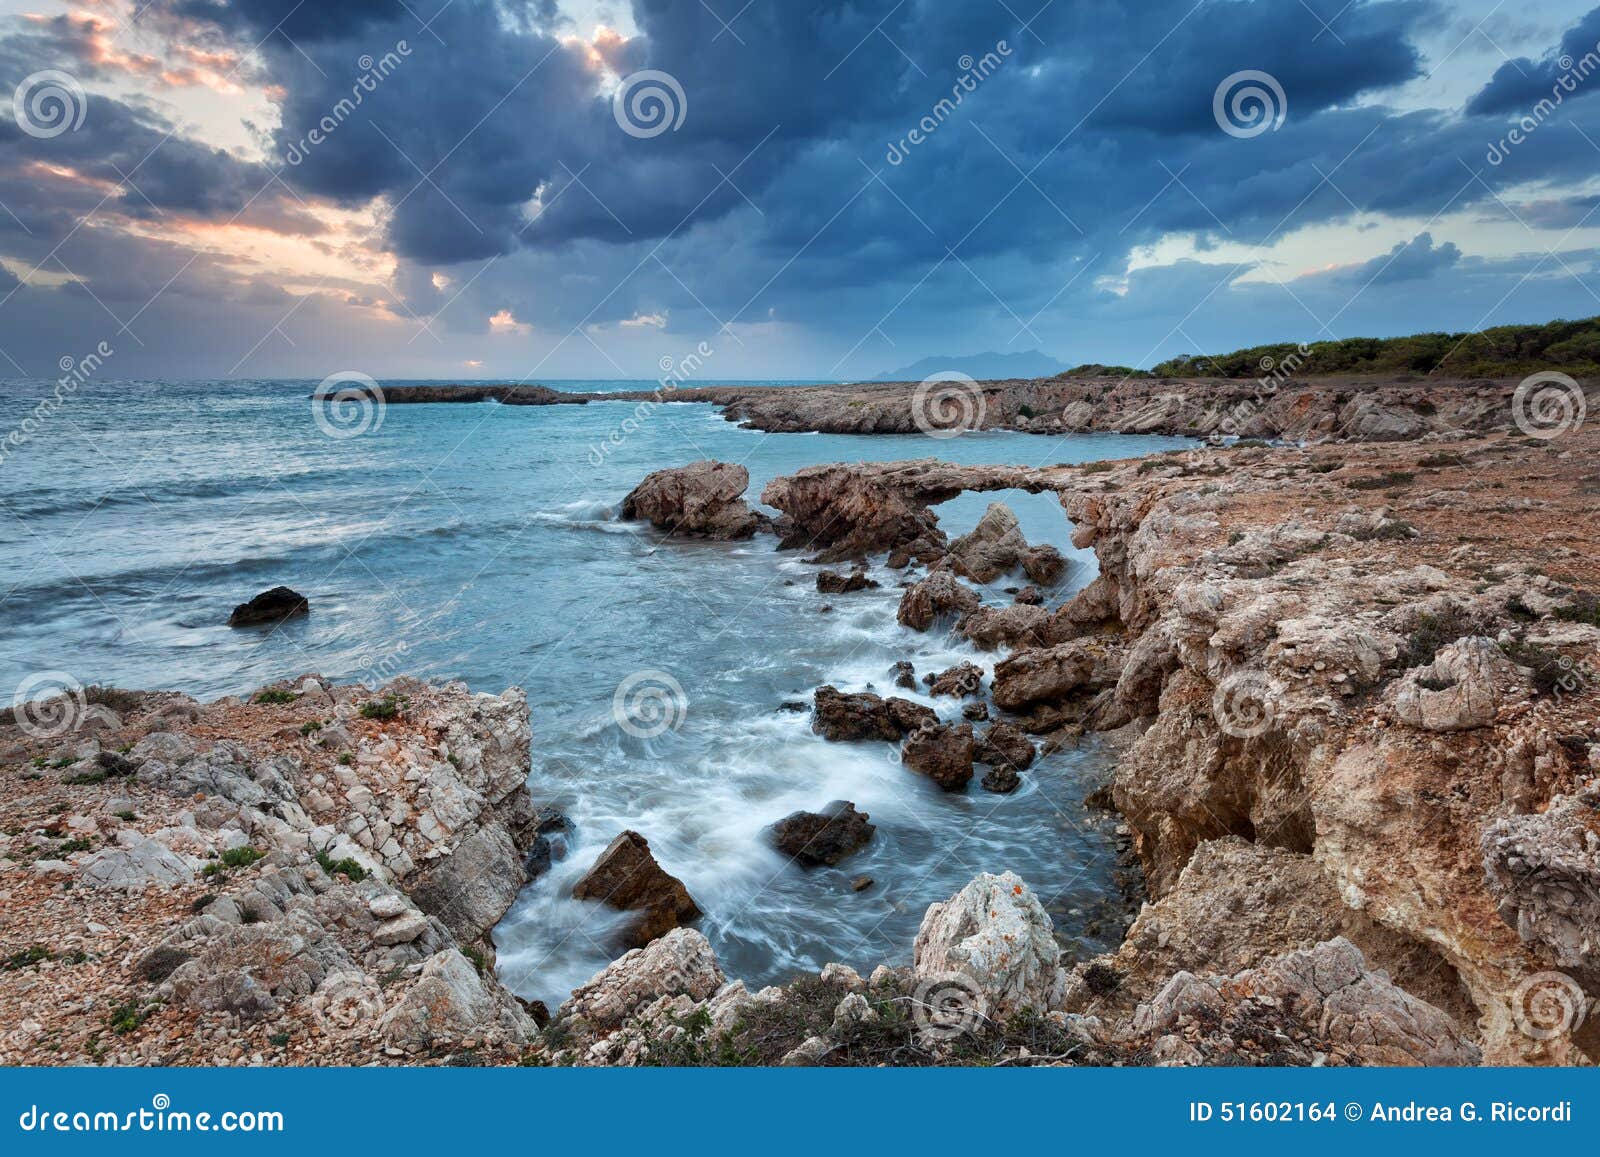 rocky coast of favignana, sicily